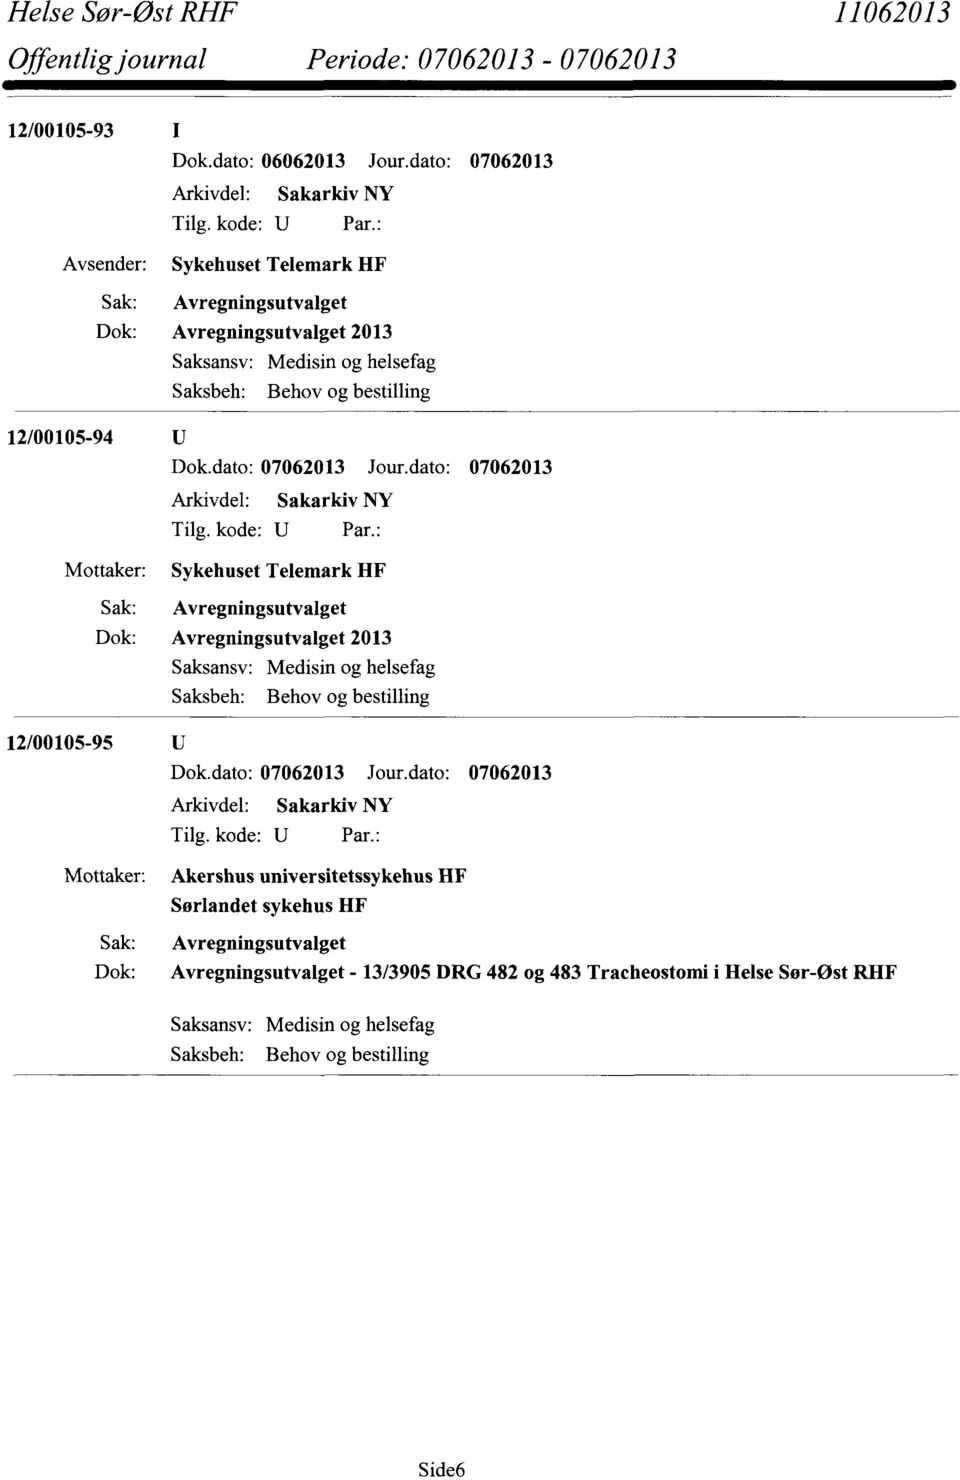 12/00105-94 Mottaker: Sykehuset Telemark HF Avregningsutvalget Avregningsutvalget 2013 Saksbeh: Behov og bestilling